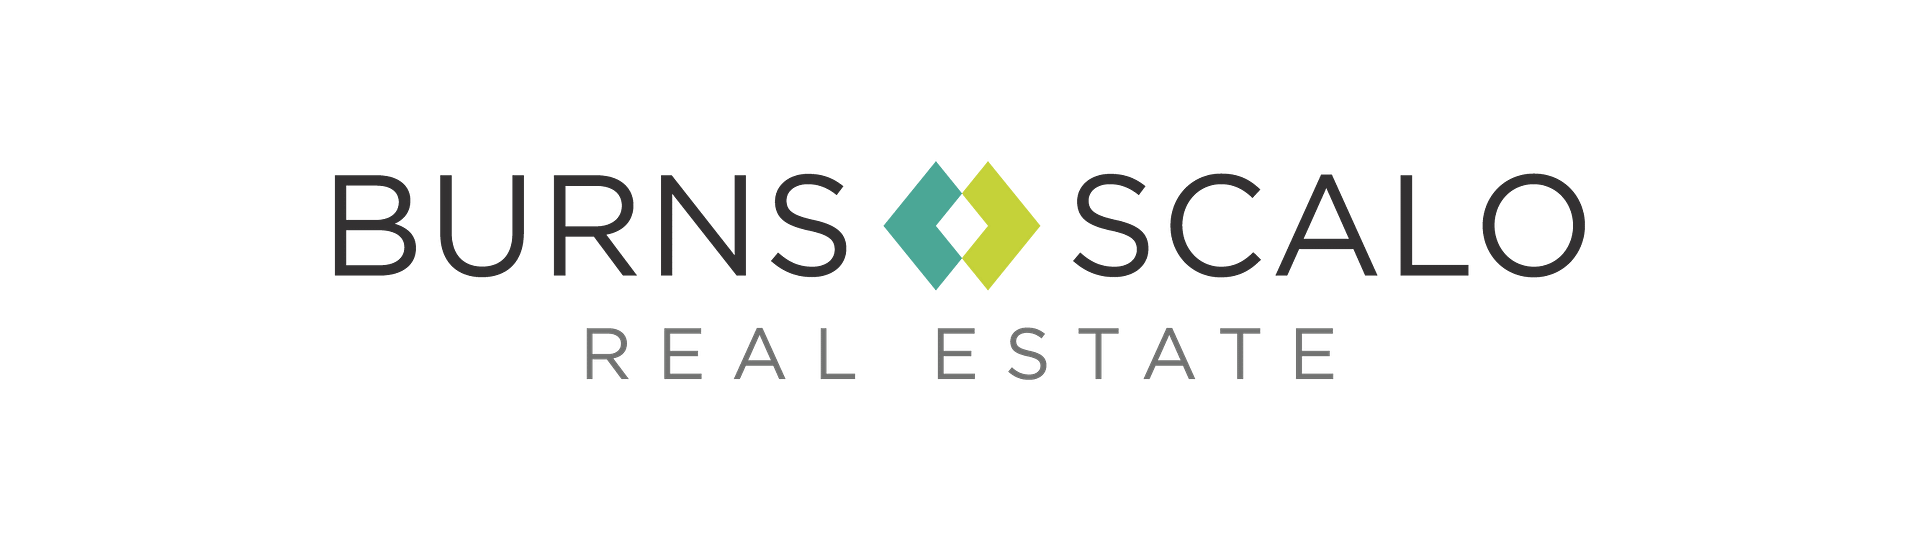 Burns Scalo Real Estate logo